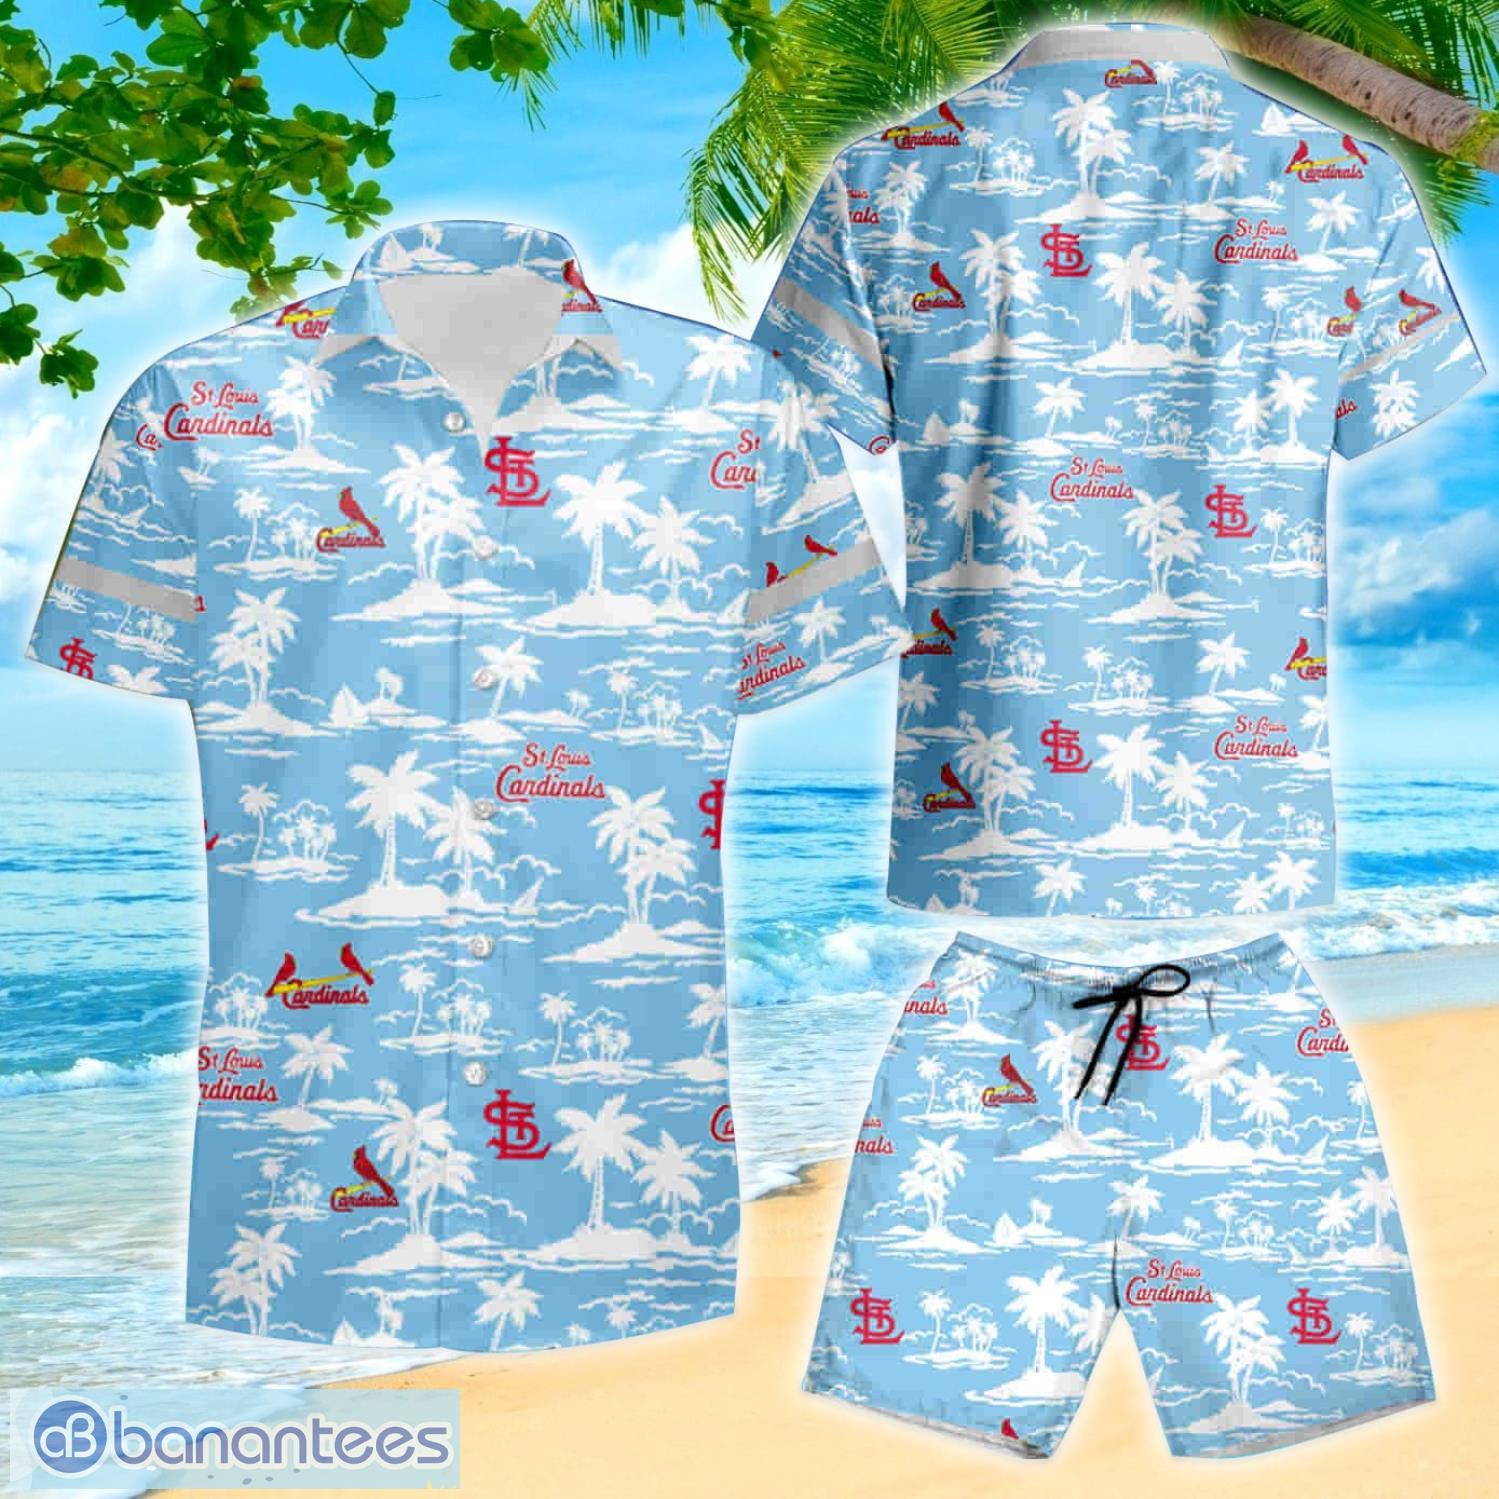 St. Louis Cardinals Nightwear, Cardinals Sleepwear, Cardinals Pajama Set